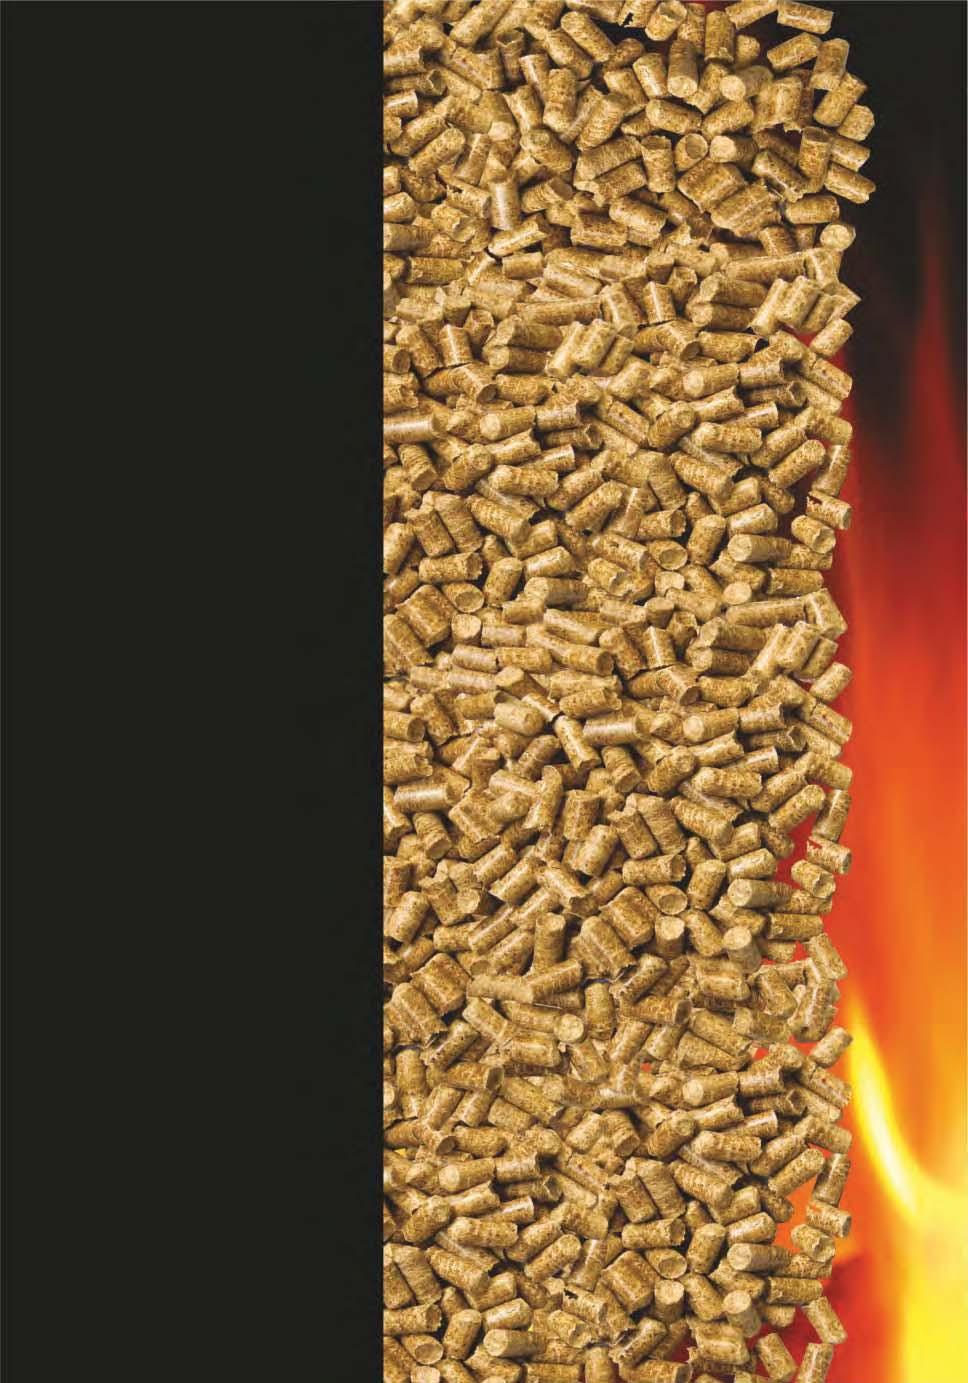 BRNiT Pell quemador de pellet Características del producto: Controlador integrado: 1) ignición y alimentación de pellet totalmente automáticas; 2) limpieza automática, hasta cuatro veces cada 24